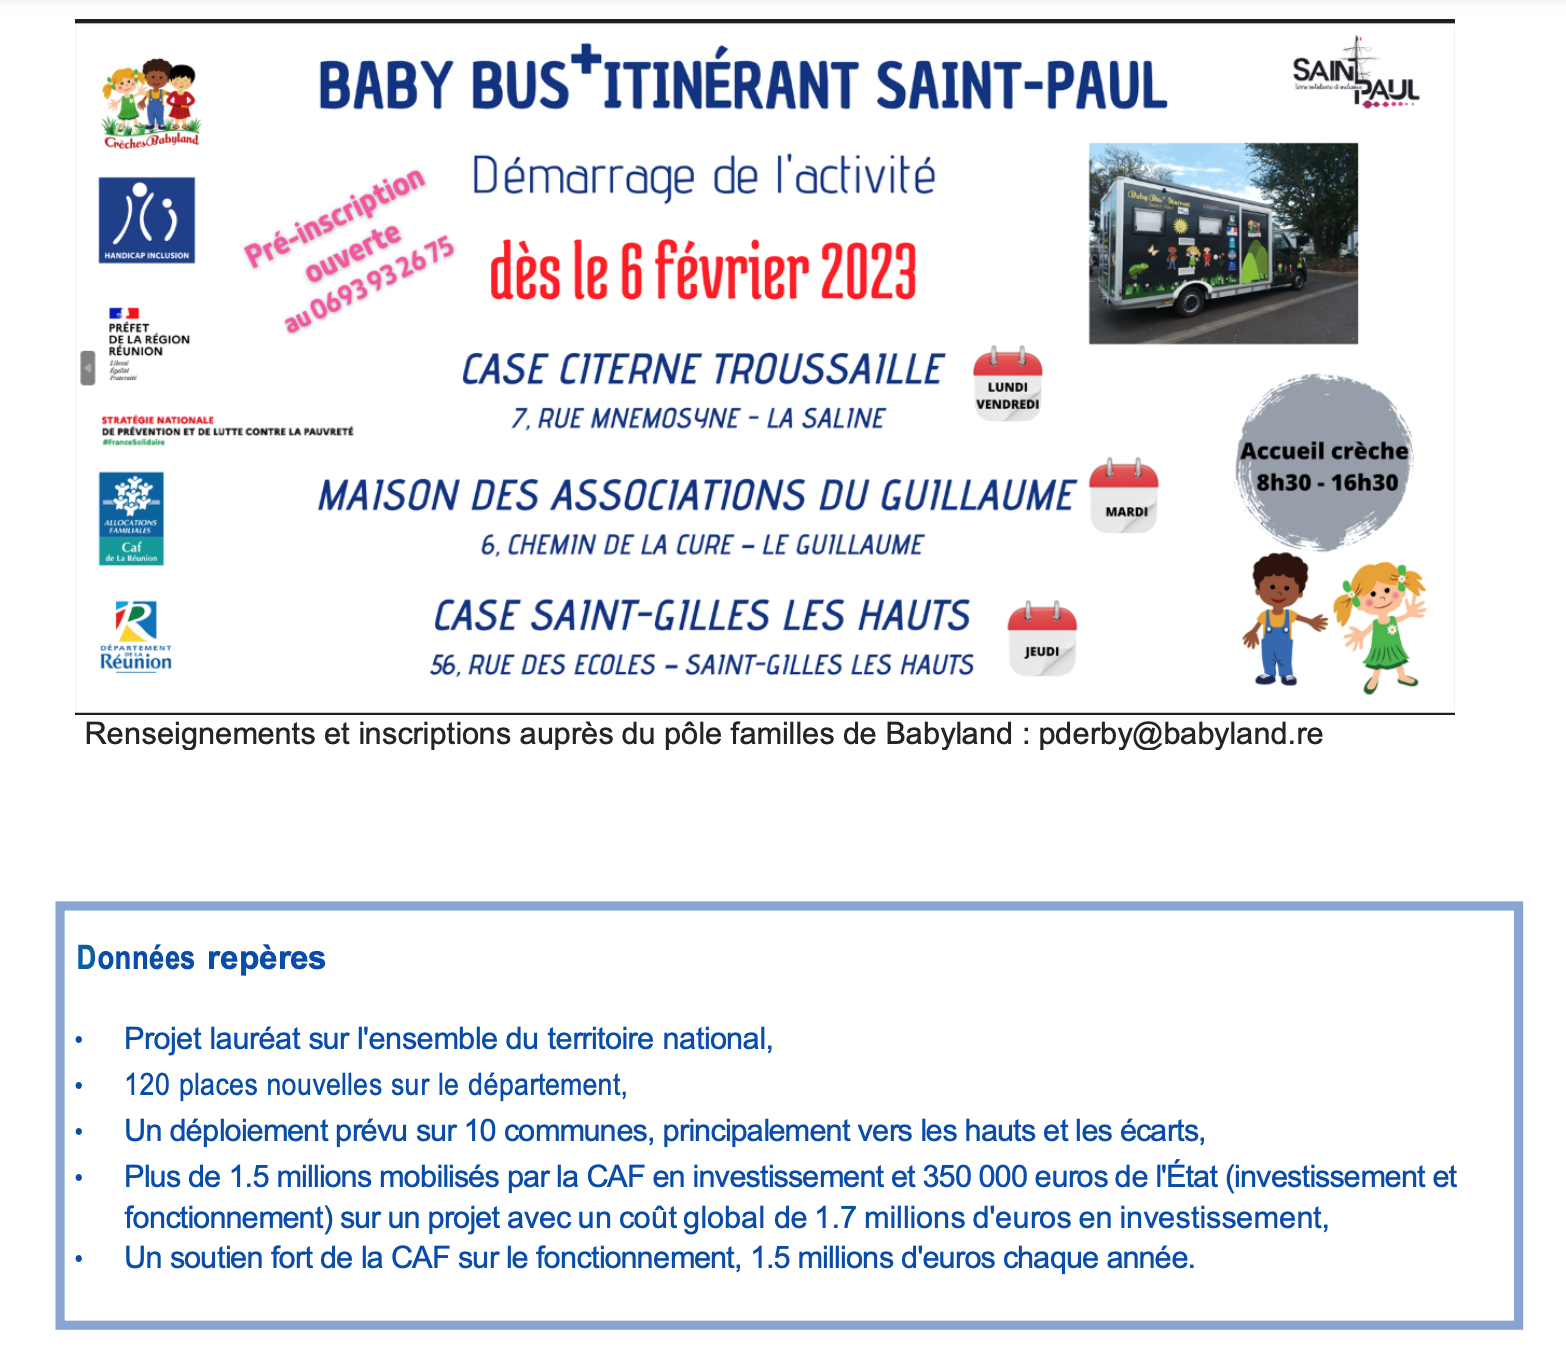 Ouverture le 6 février 2023 du Baby Bus+ itinérant à Saint-Paul.